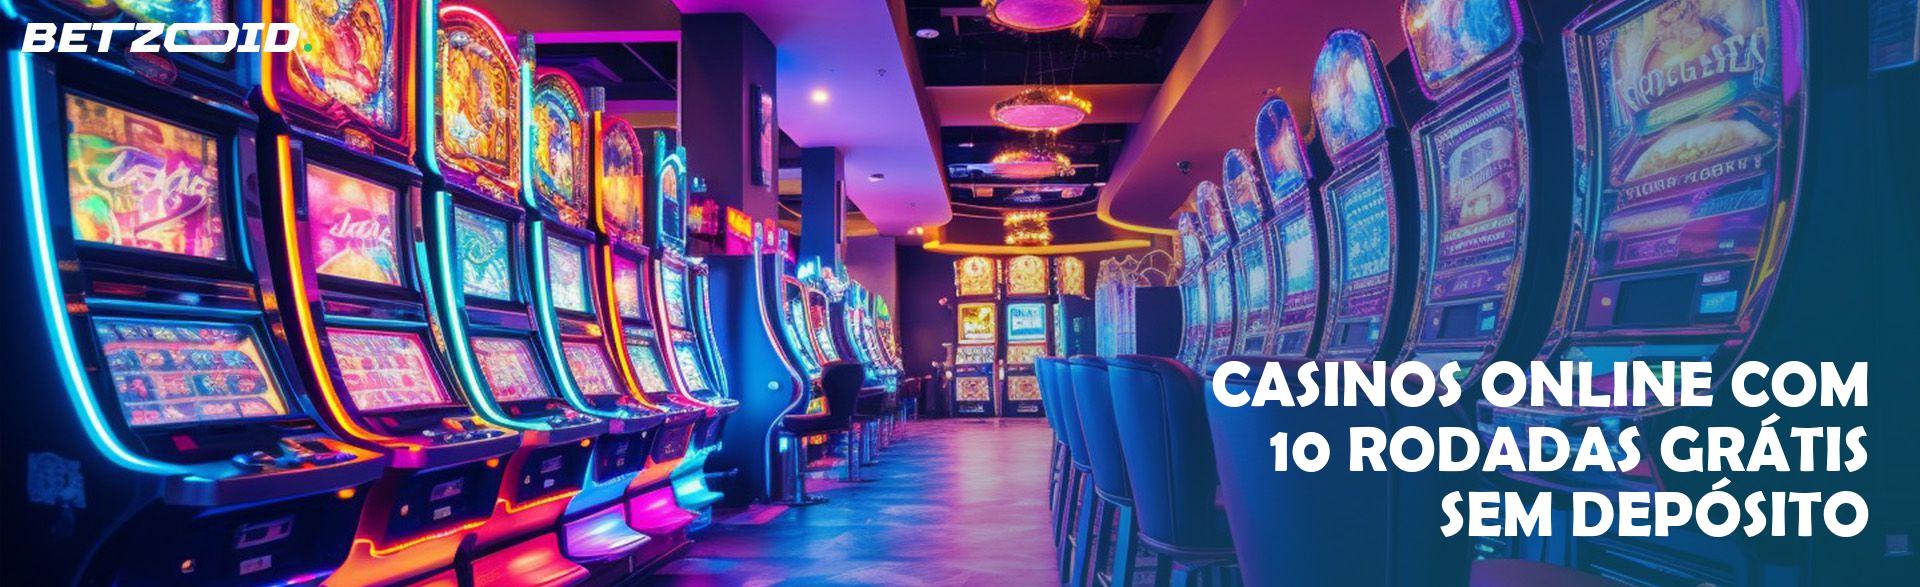 Casinos Online com 10 Rodadas Grátis sem Depósito.